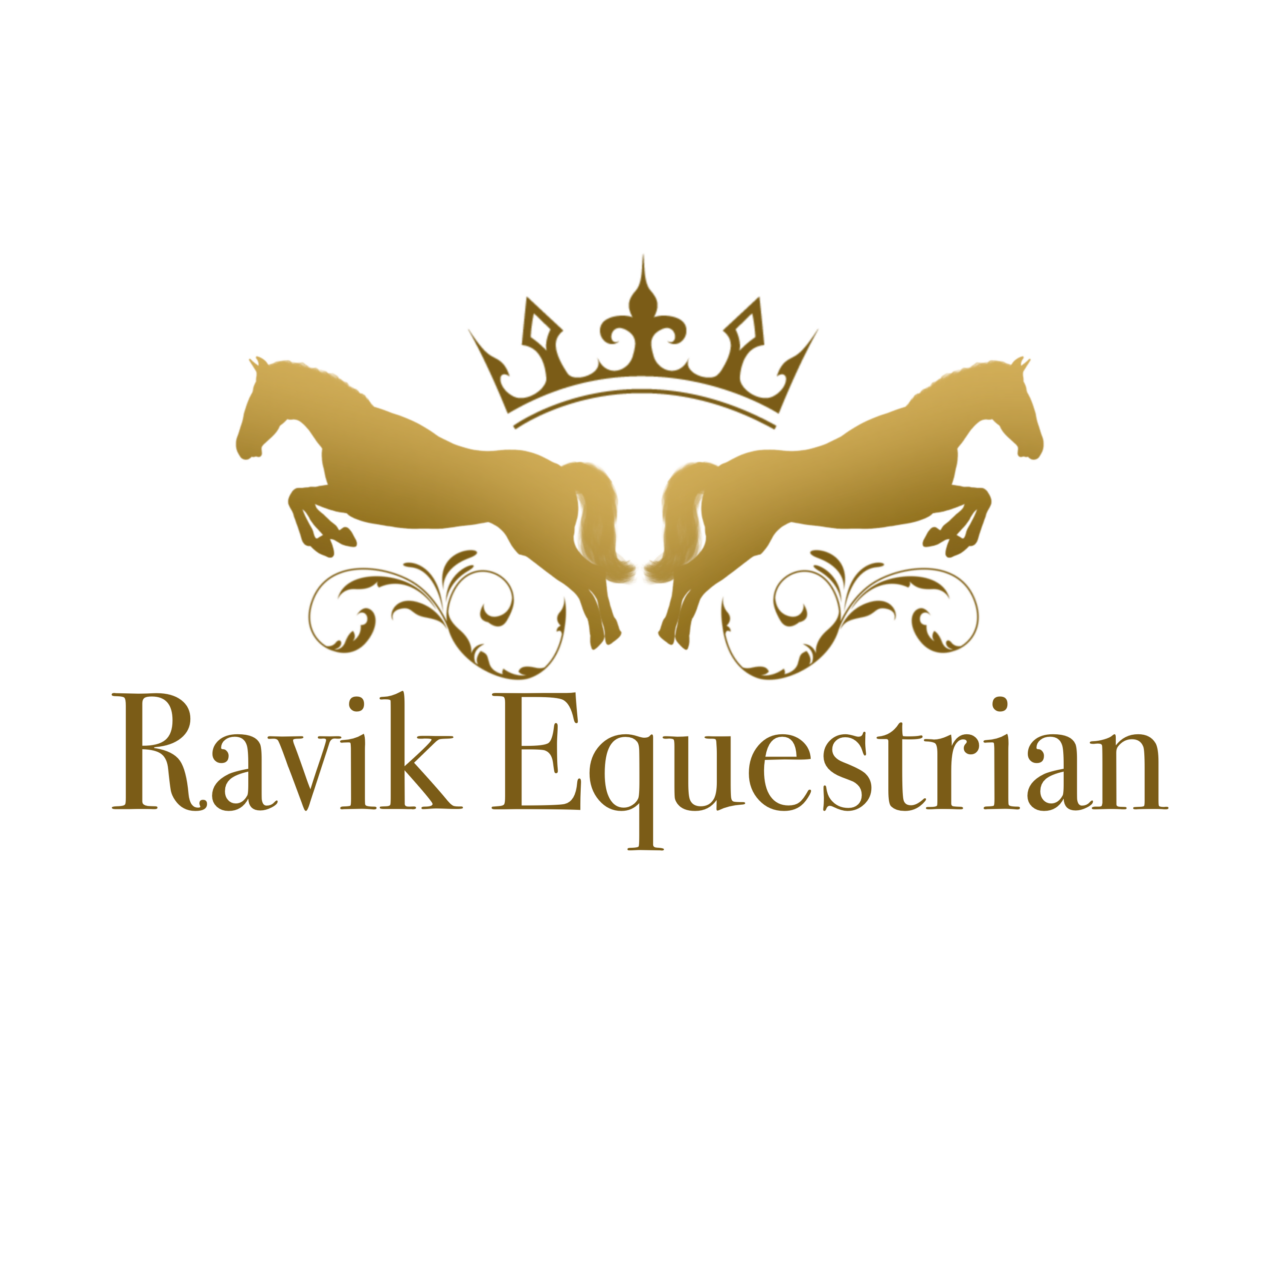 https://norskbedriftsformidling.no/wp-content/uploads/2021/10/Ravik-Equestrian-1280x1280.png